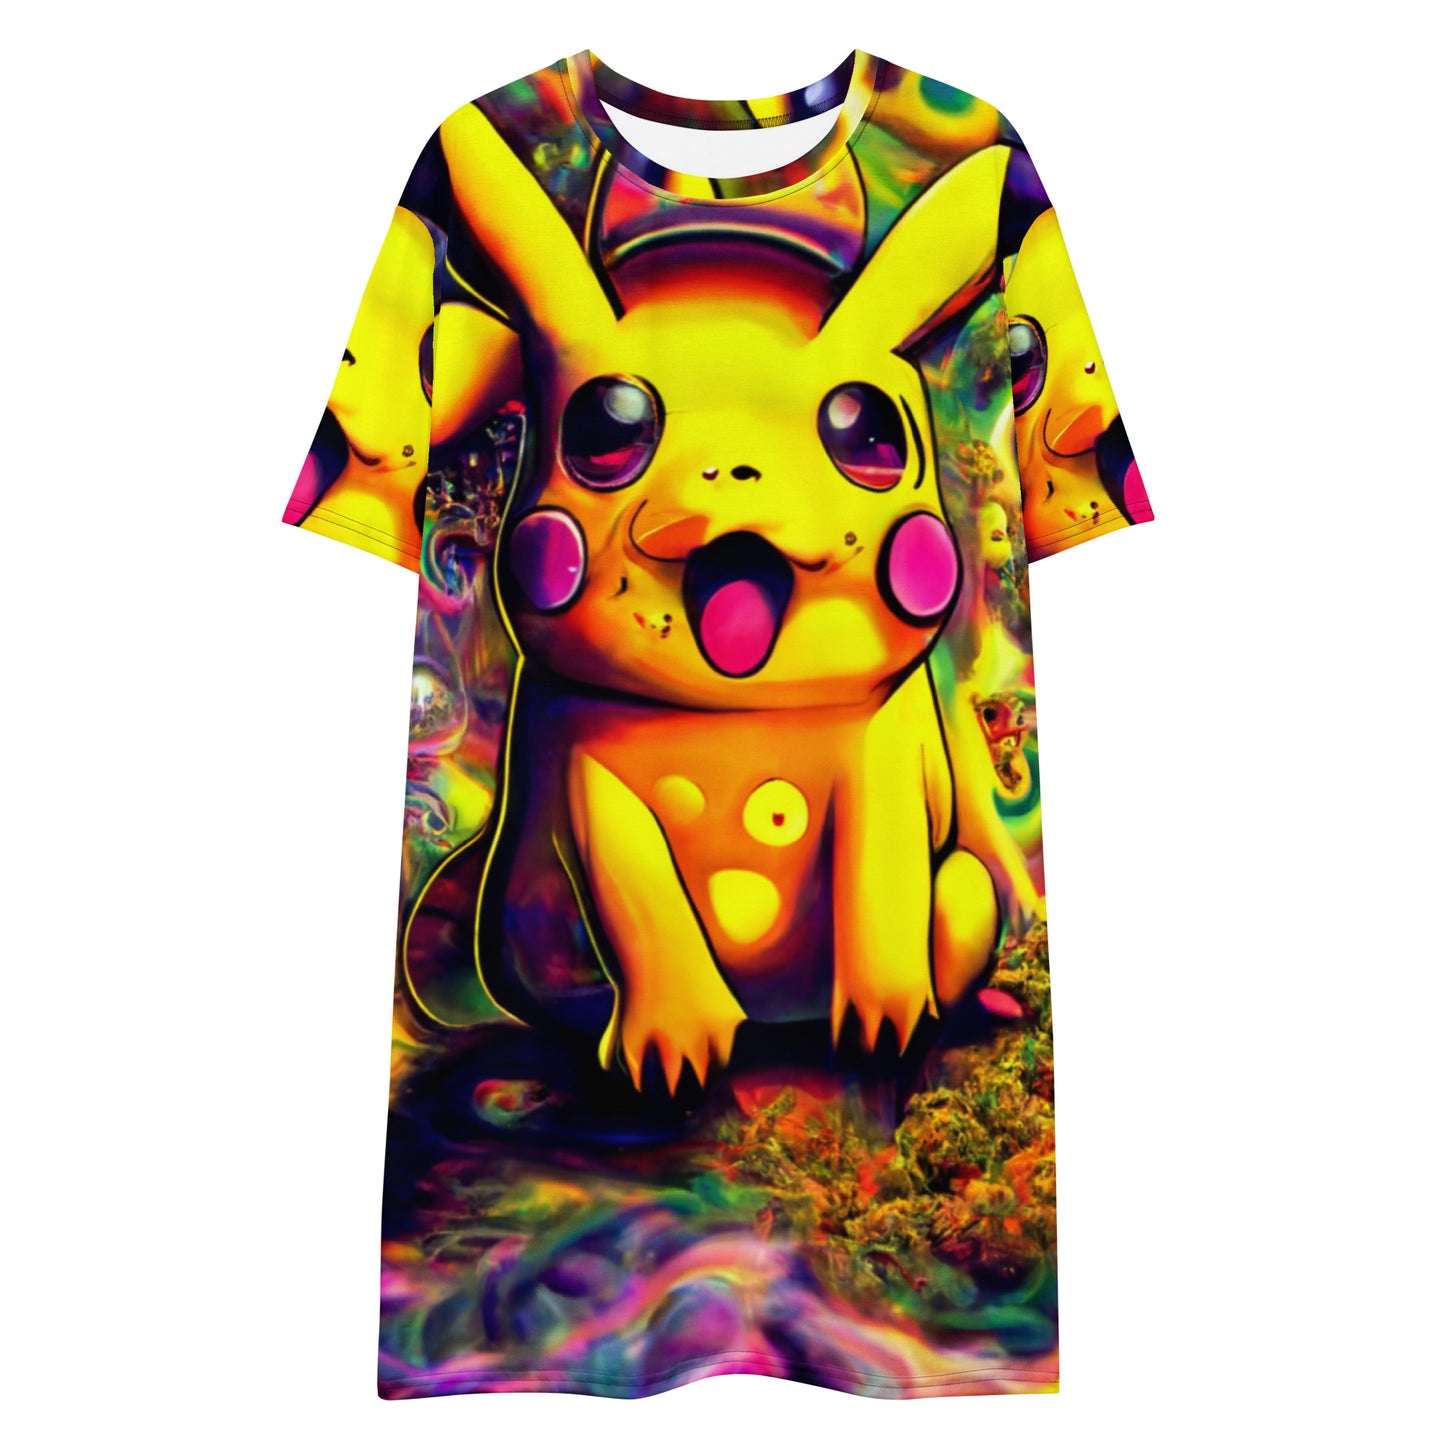 Pikachu Trip 1.0 T-shirt Dress